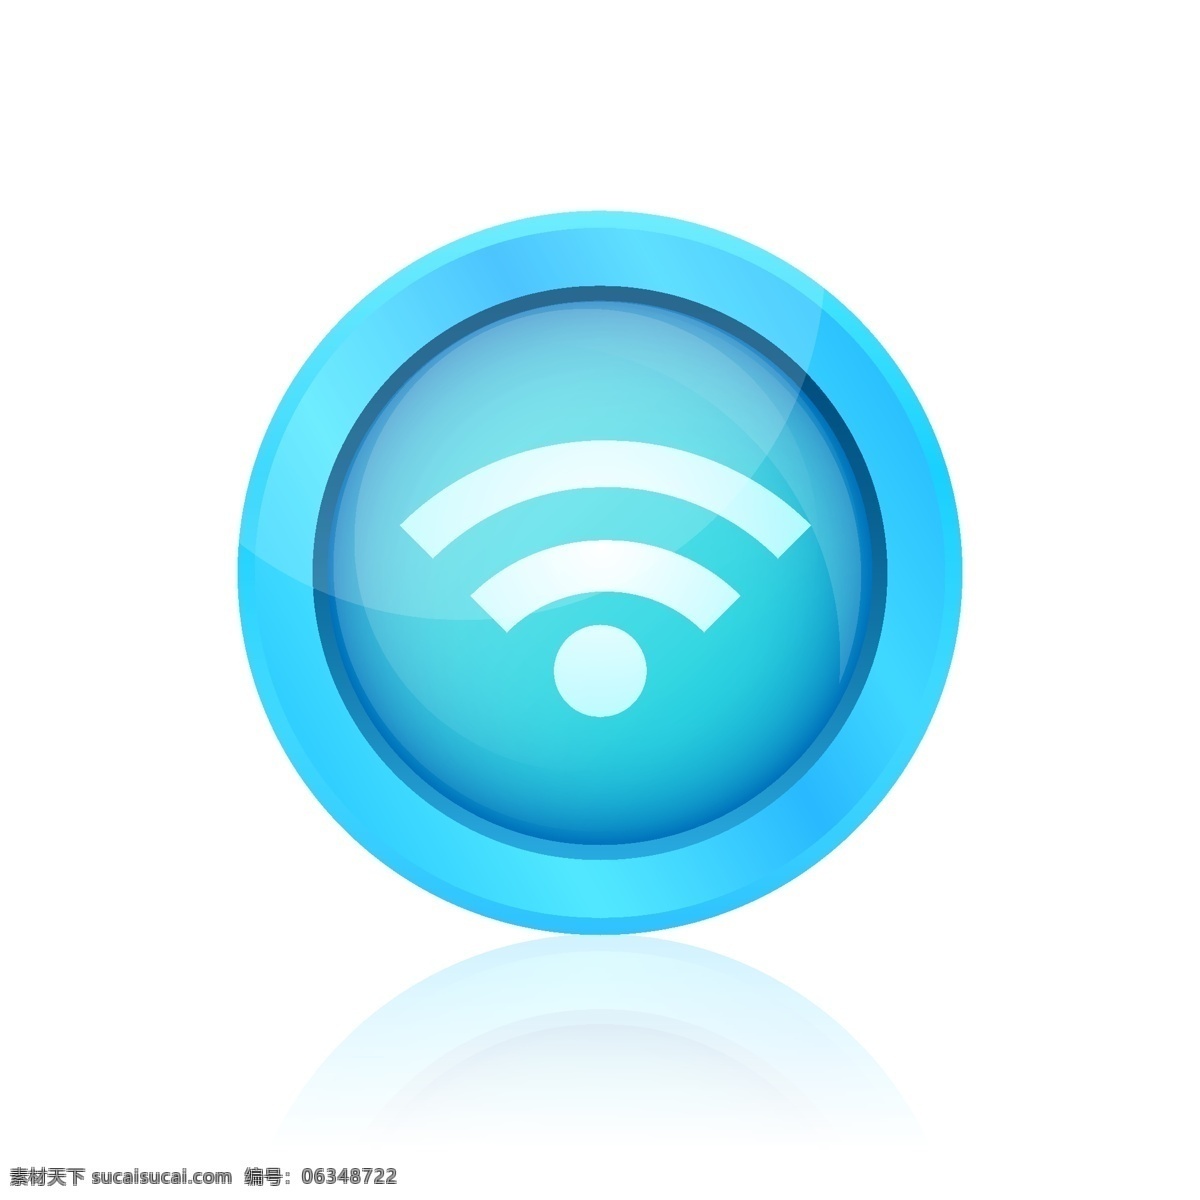 蓝色 wifi 按钮 图标 圆圈 网页 蓝 网站按钮 圆形 网页图标 连接 网页按钮 连接元件 多媒体 网站连接 网站图标 网页元素 白色